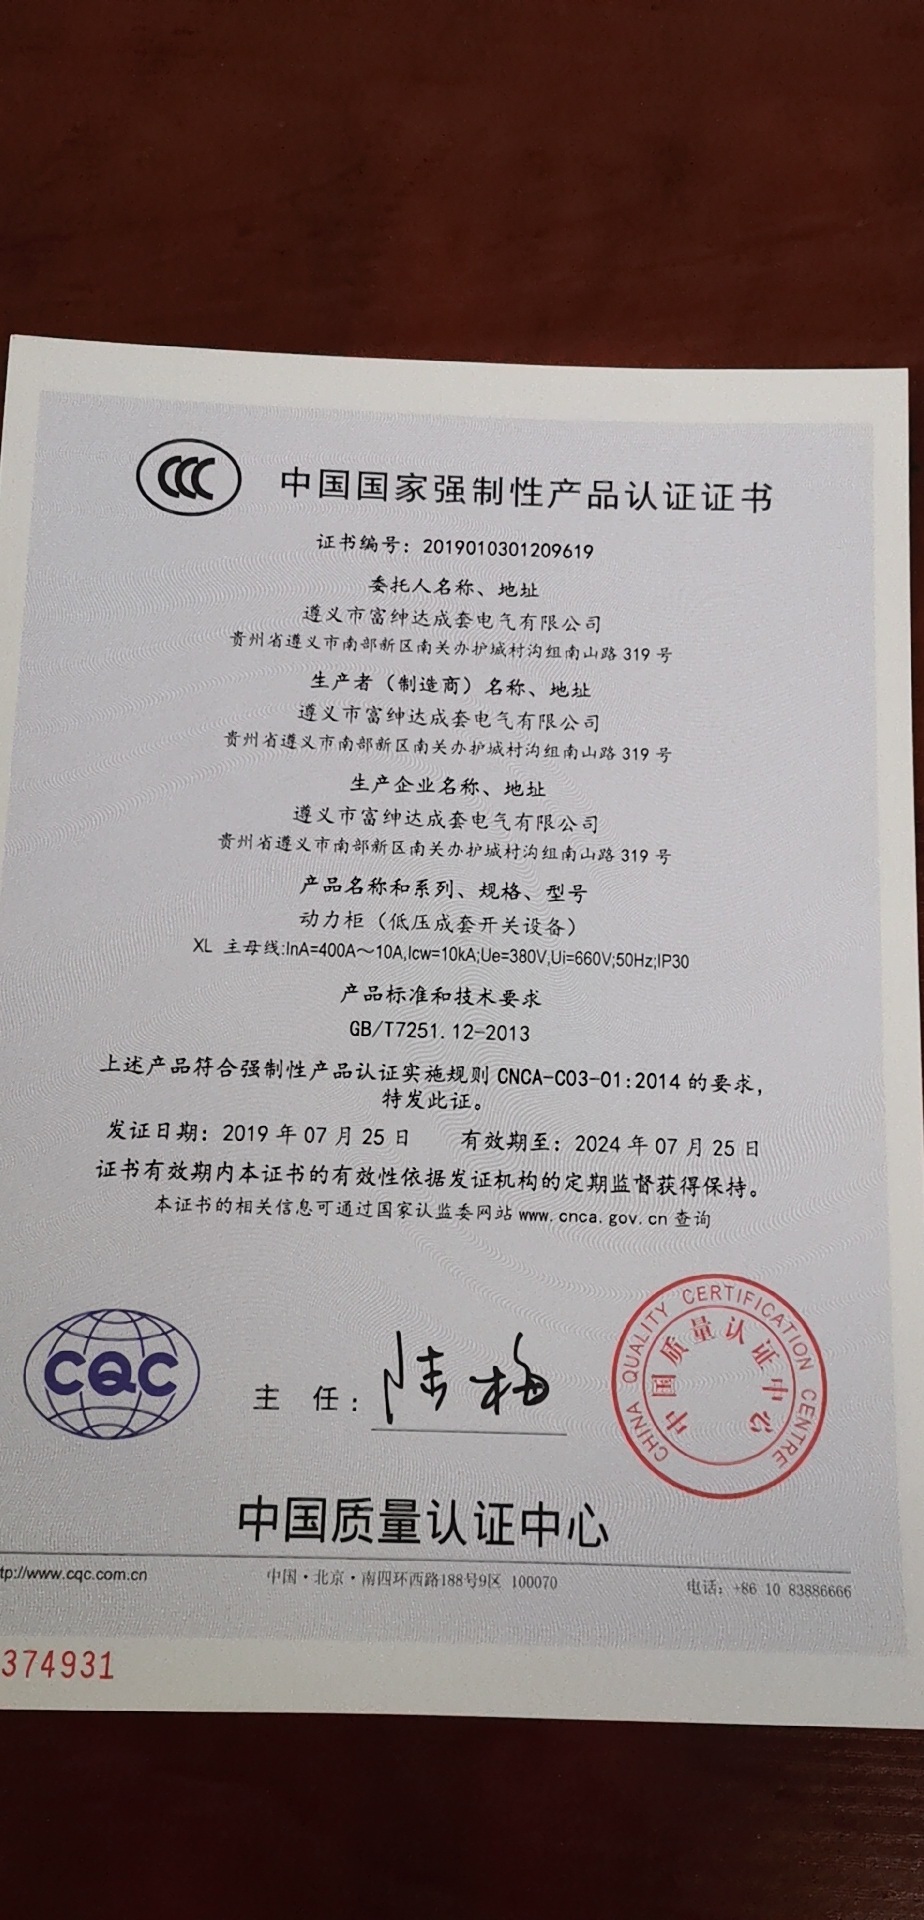 遵义美女app黄的全免费电气成套有限公司动力柜获得中国国家强制性产品认证证书